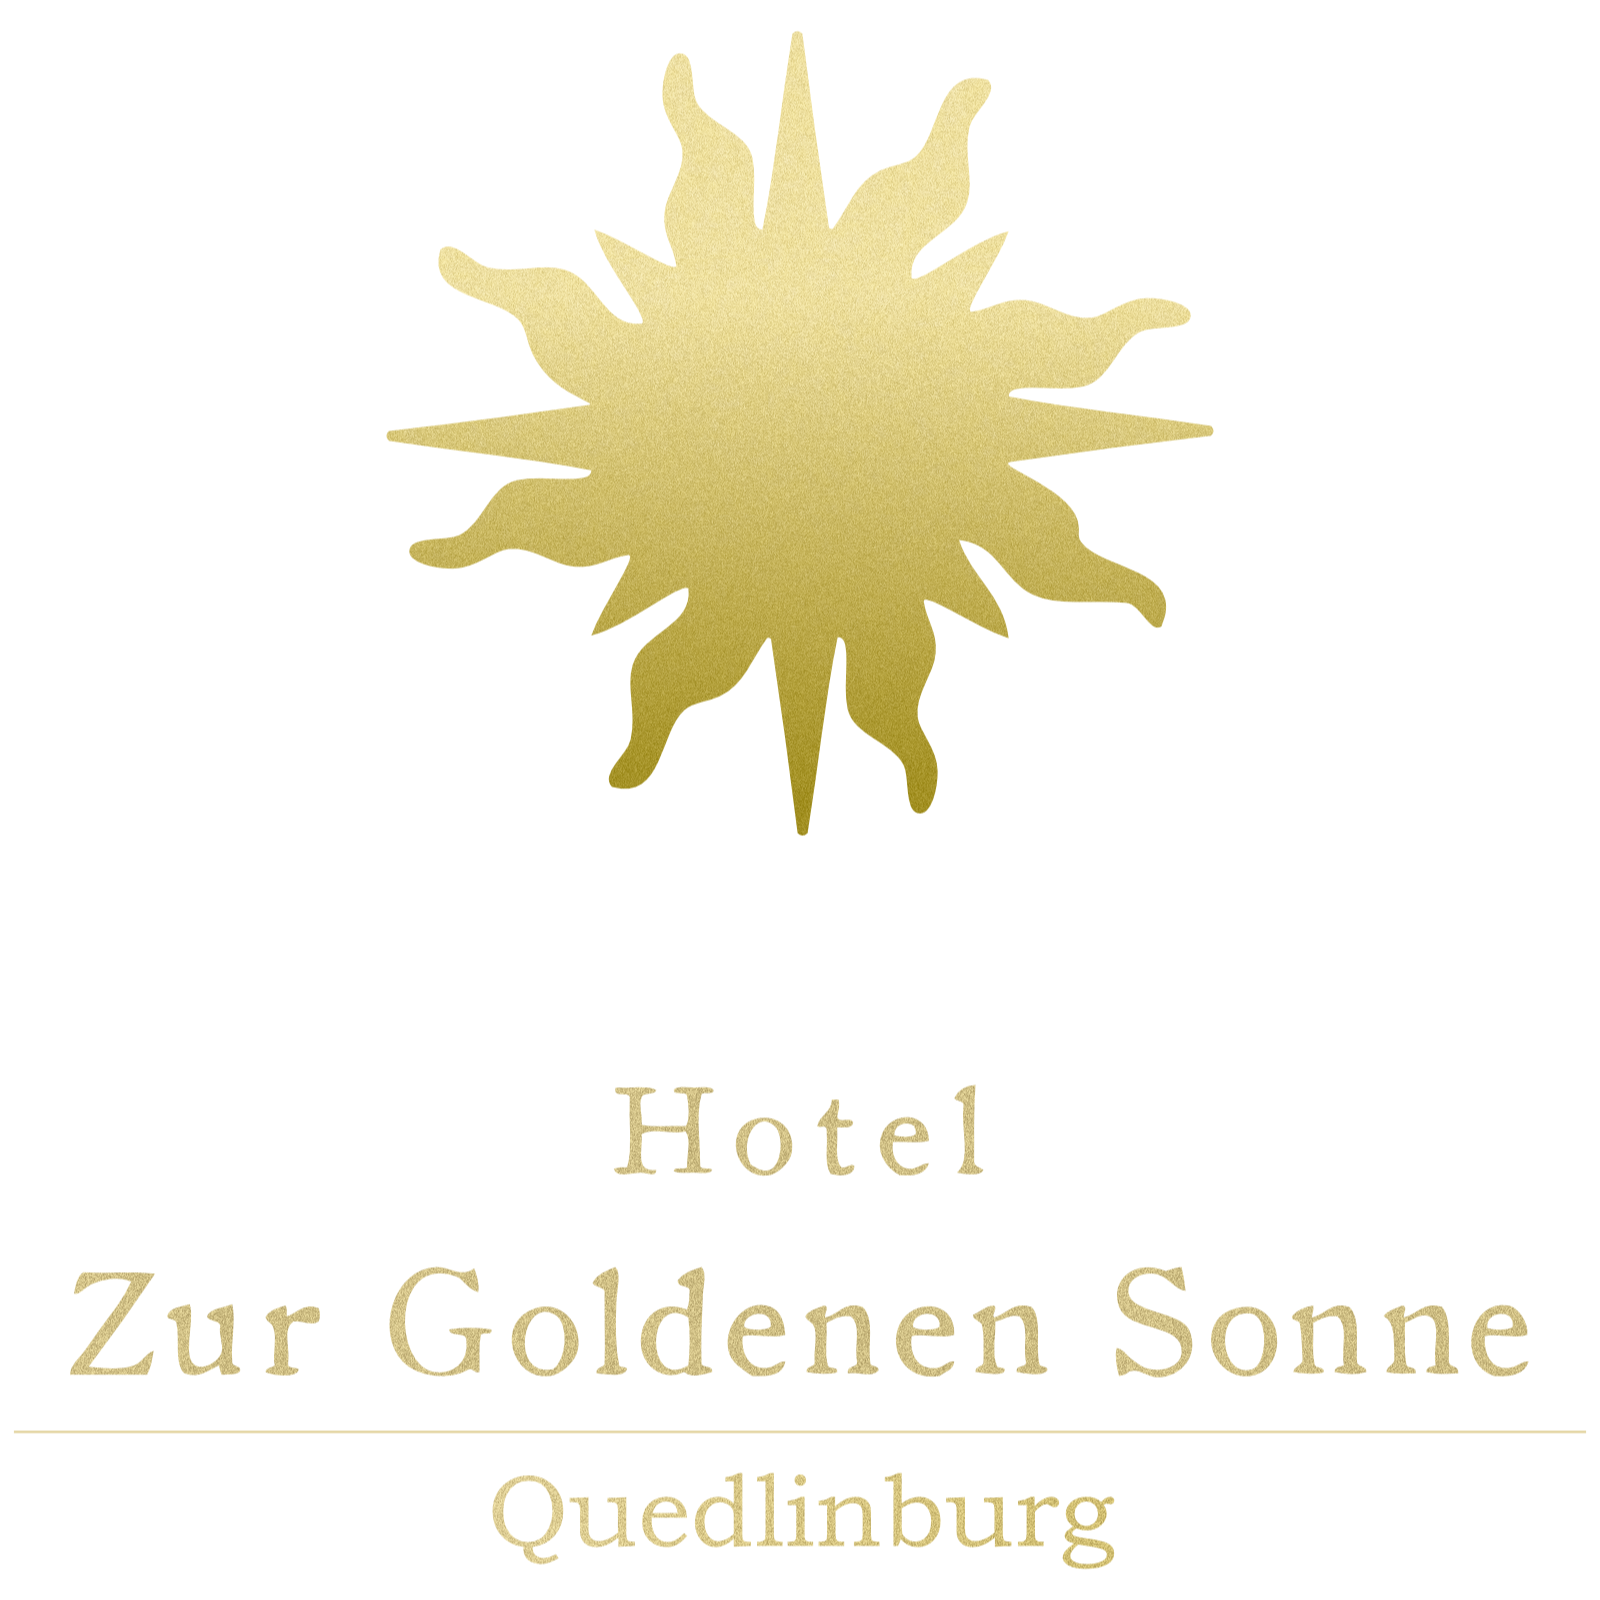 Quedlinburg Hotel - Zur Goldenen Sonne Logo